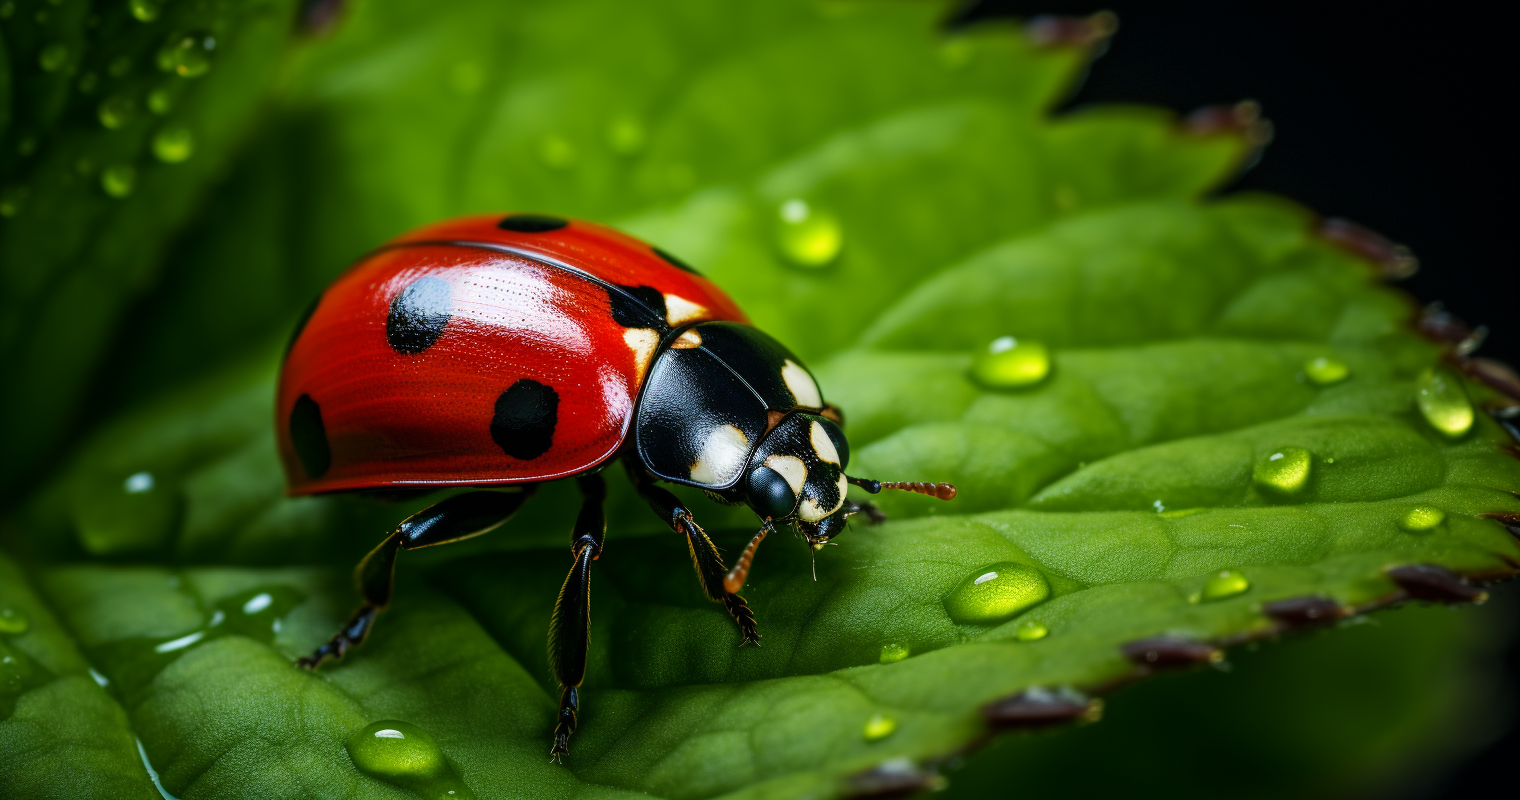 Ladybug On A leaf